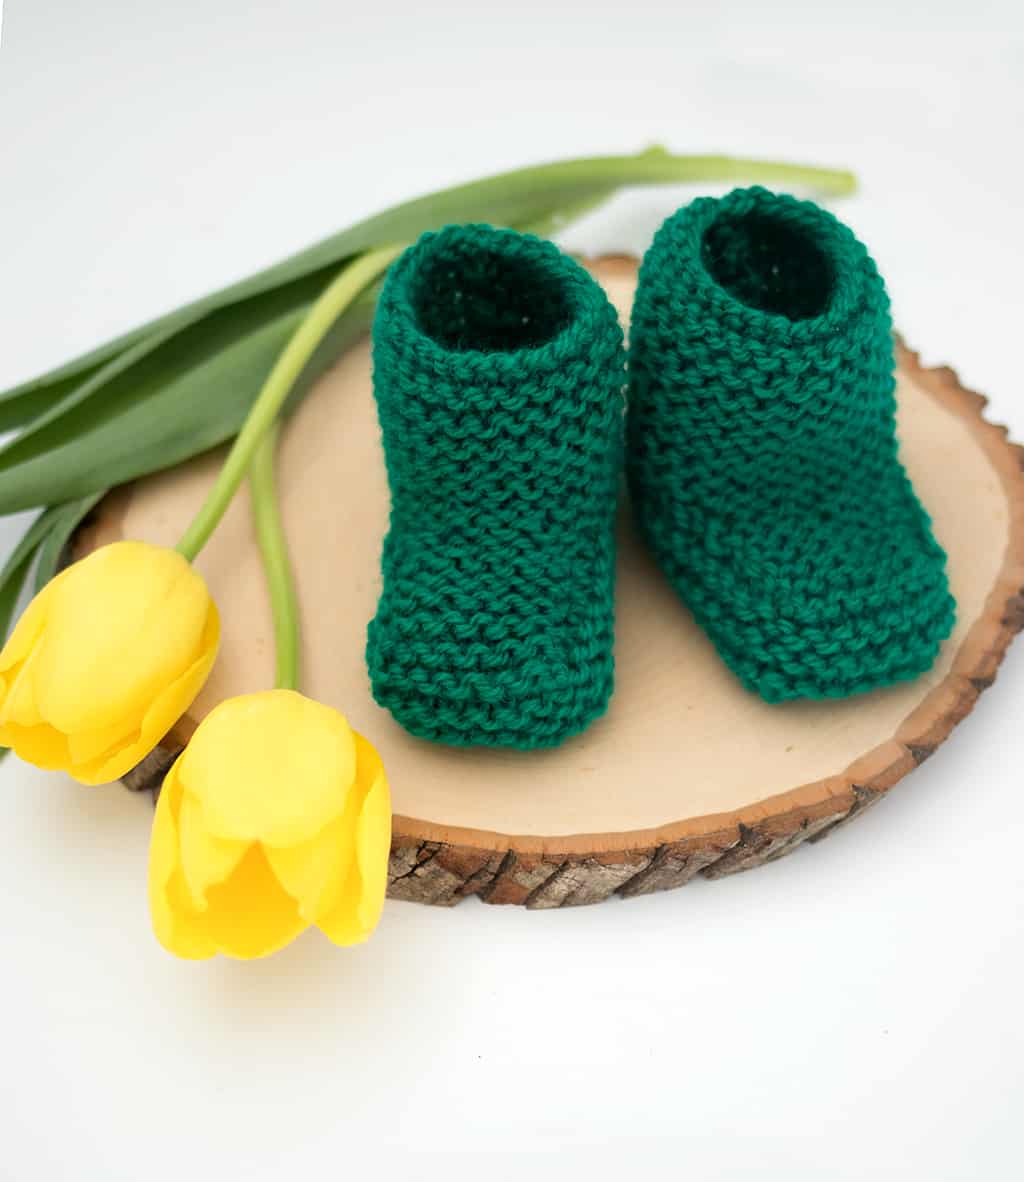 Garter Stitch Booties Knitting Pattern by Knitting Blogger Gina Michele